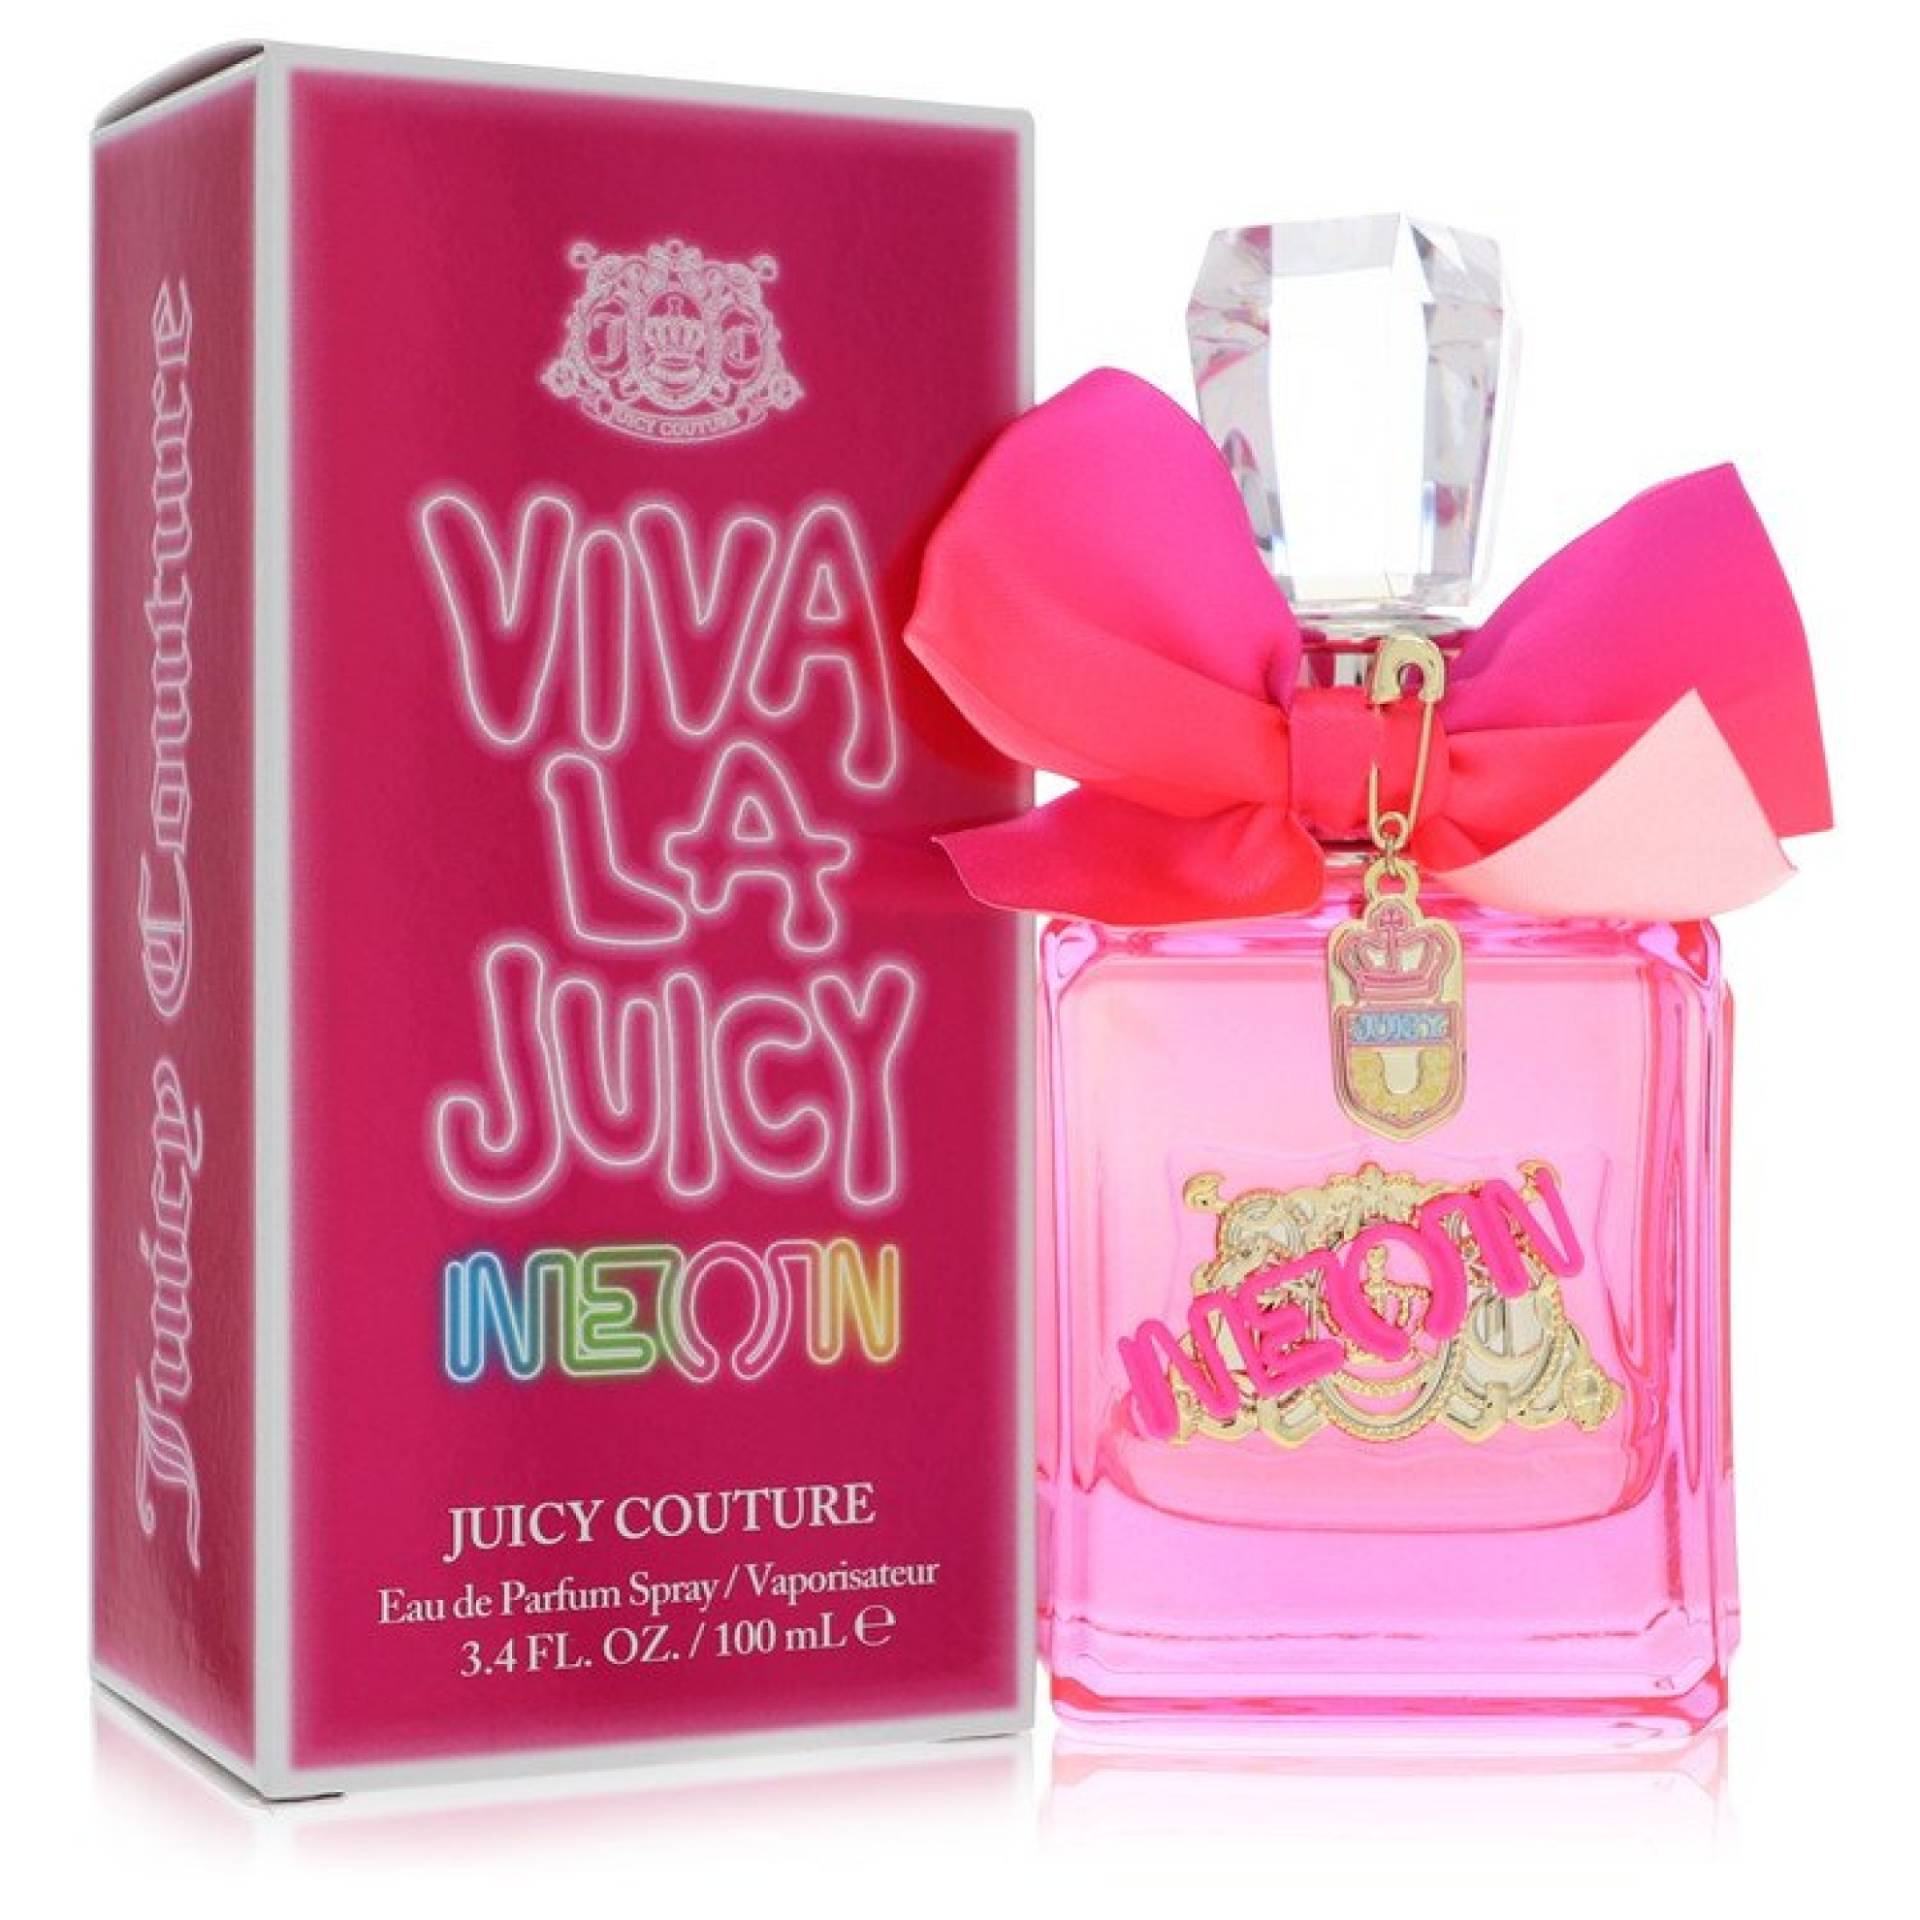 Juicy Couture Viva La Juicy Neon Eau De Parfum Spray 101 ml von Juicy Couture